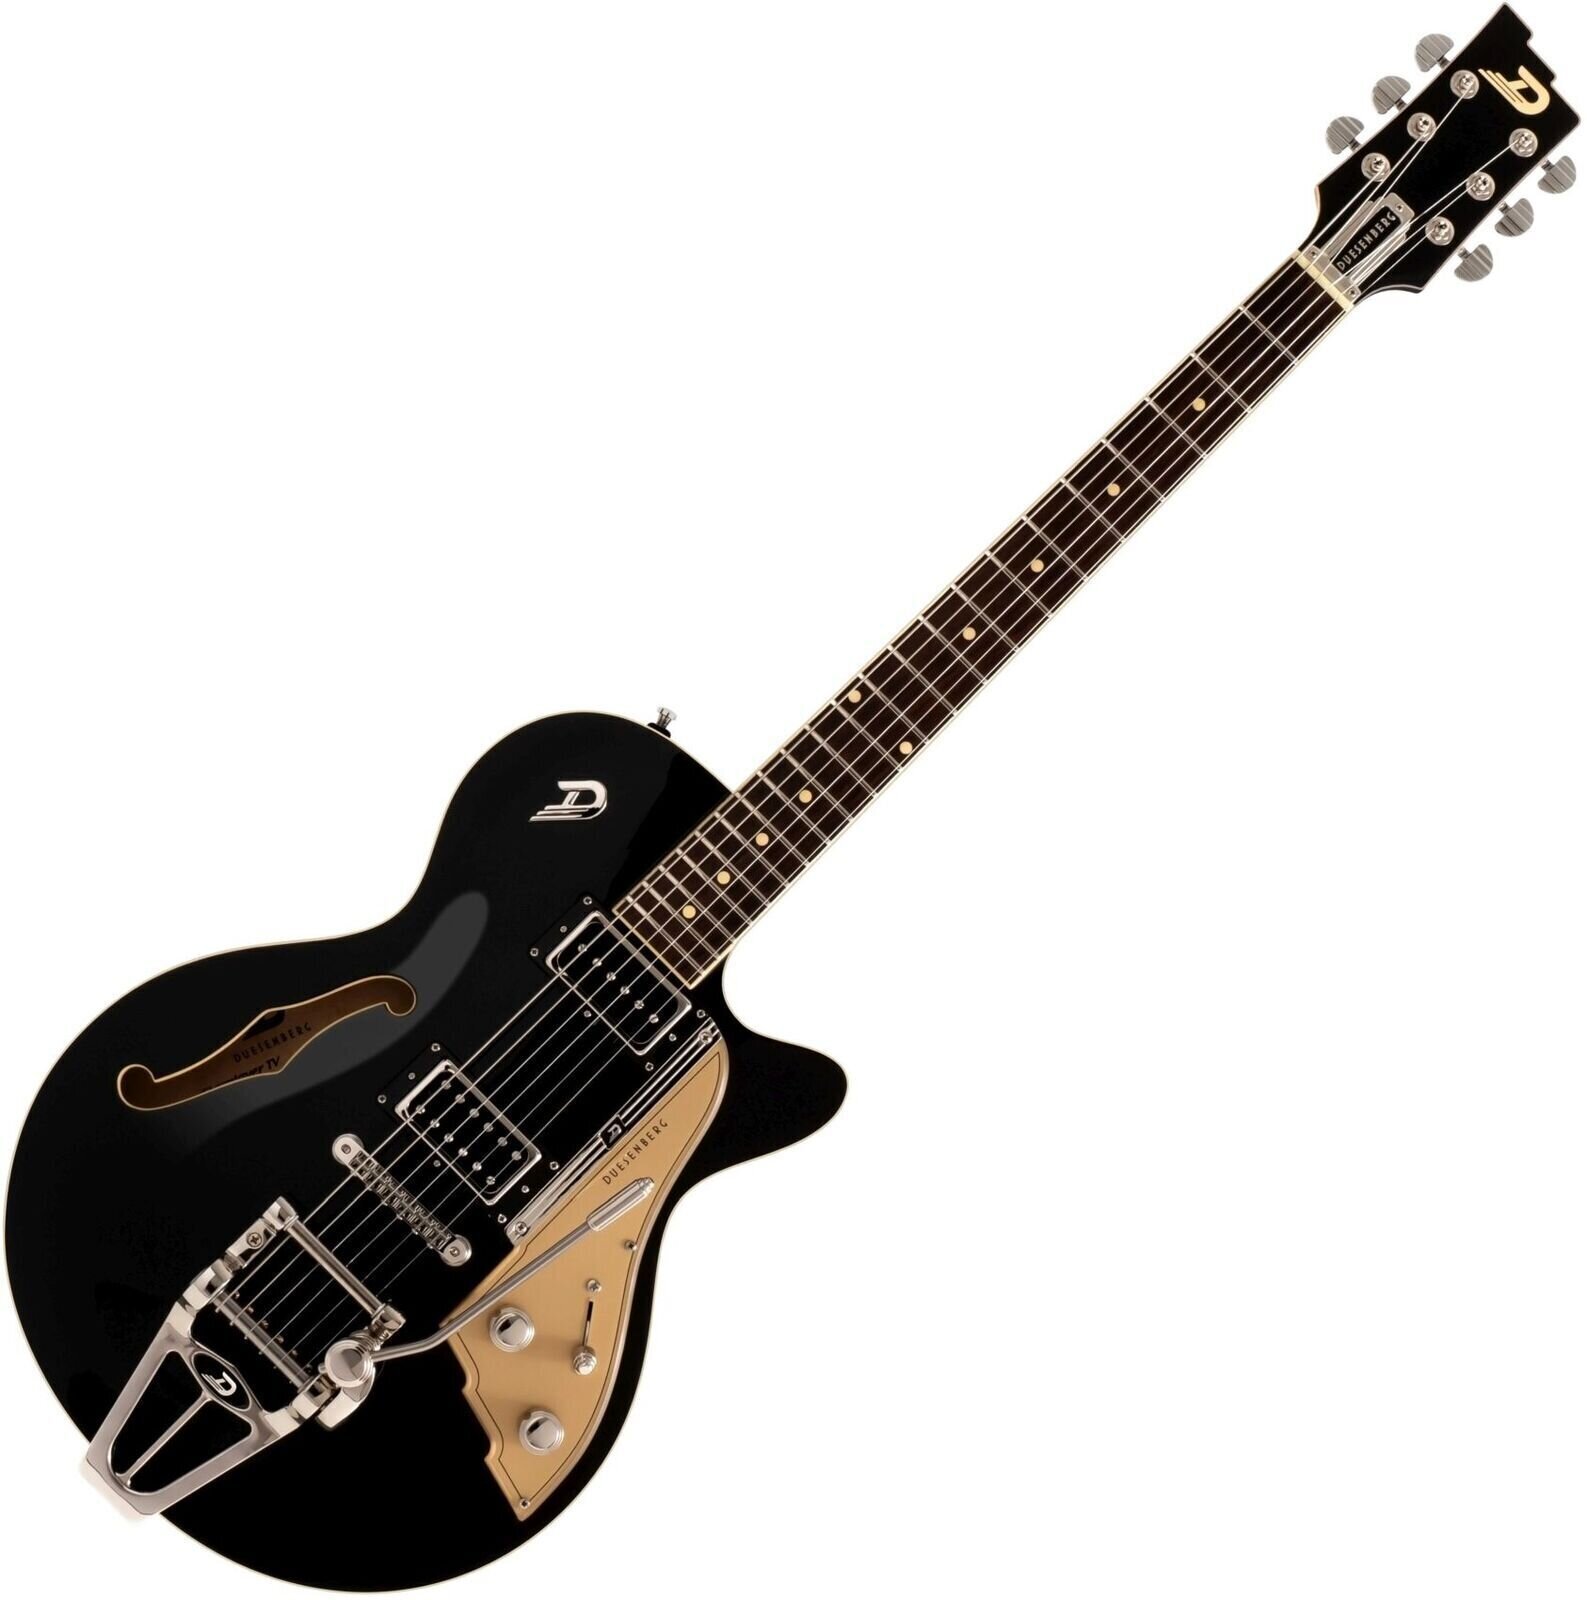 Semiakustická kytara Duesenberg Starplayer TV Black